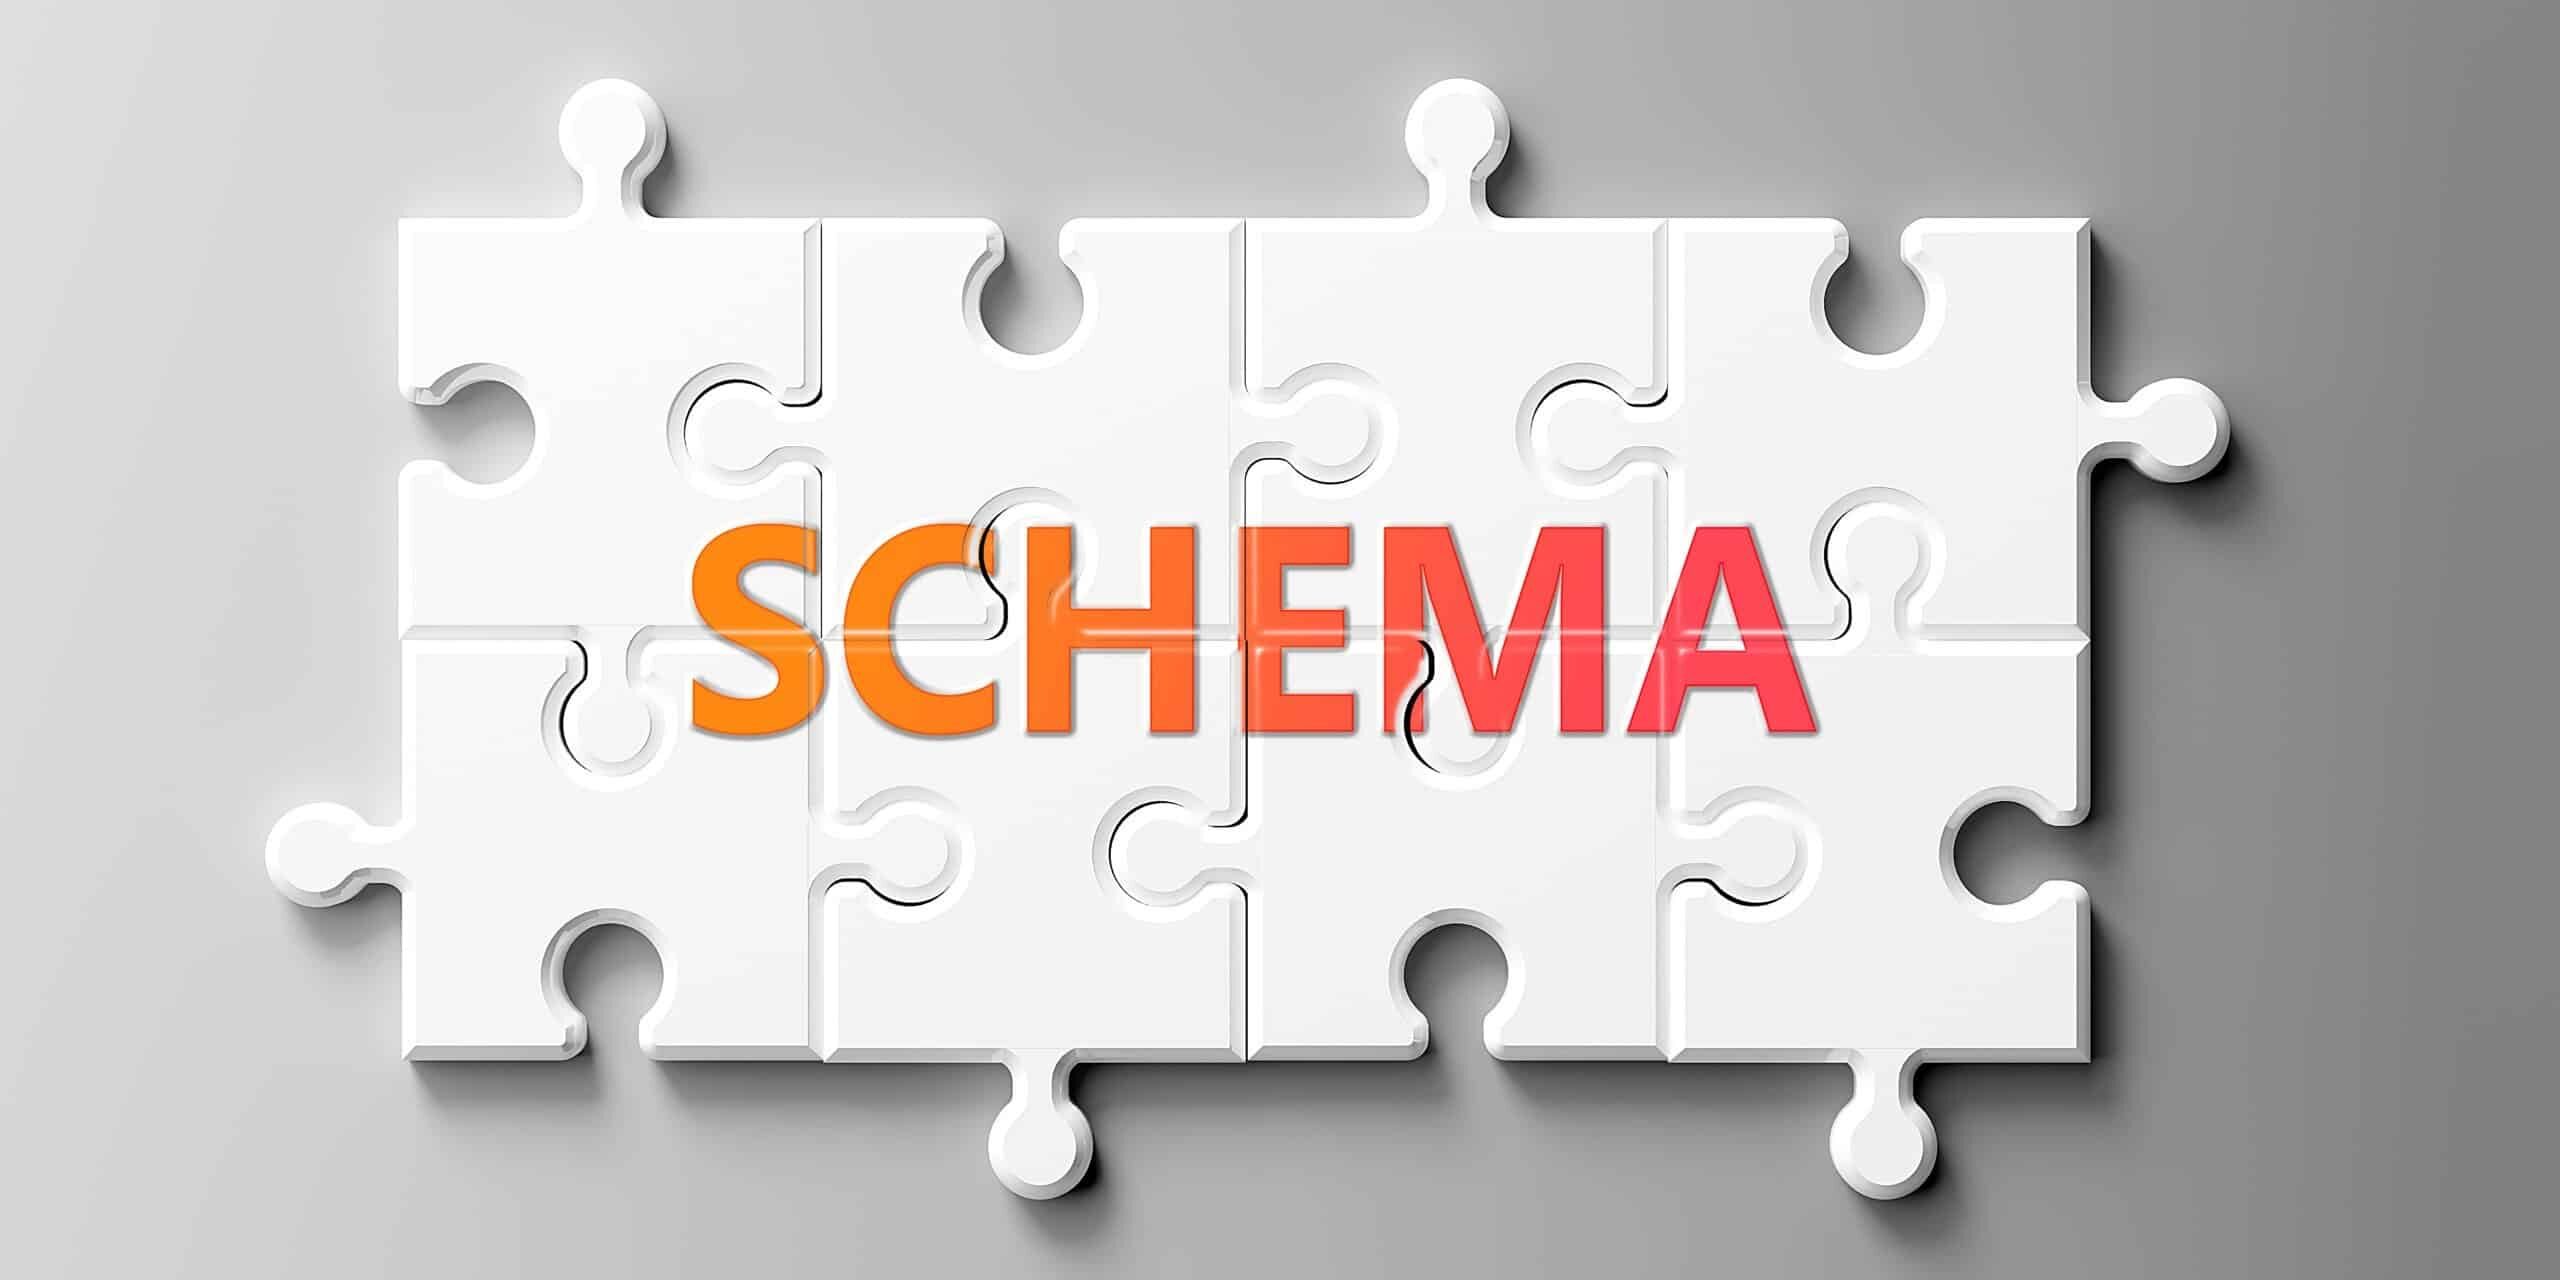 Schema.org: Das Wort "Schema" auf den Puzzle-Teilen